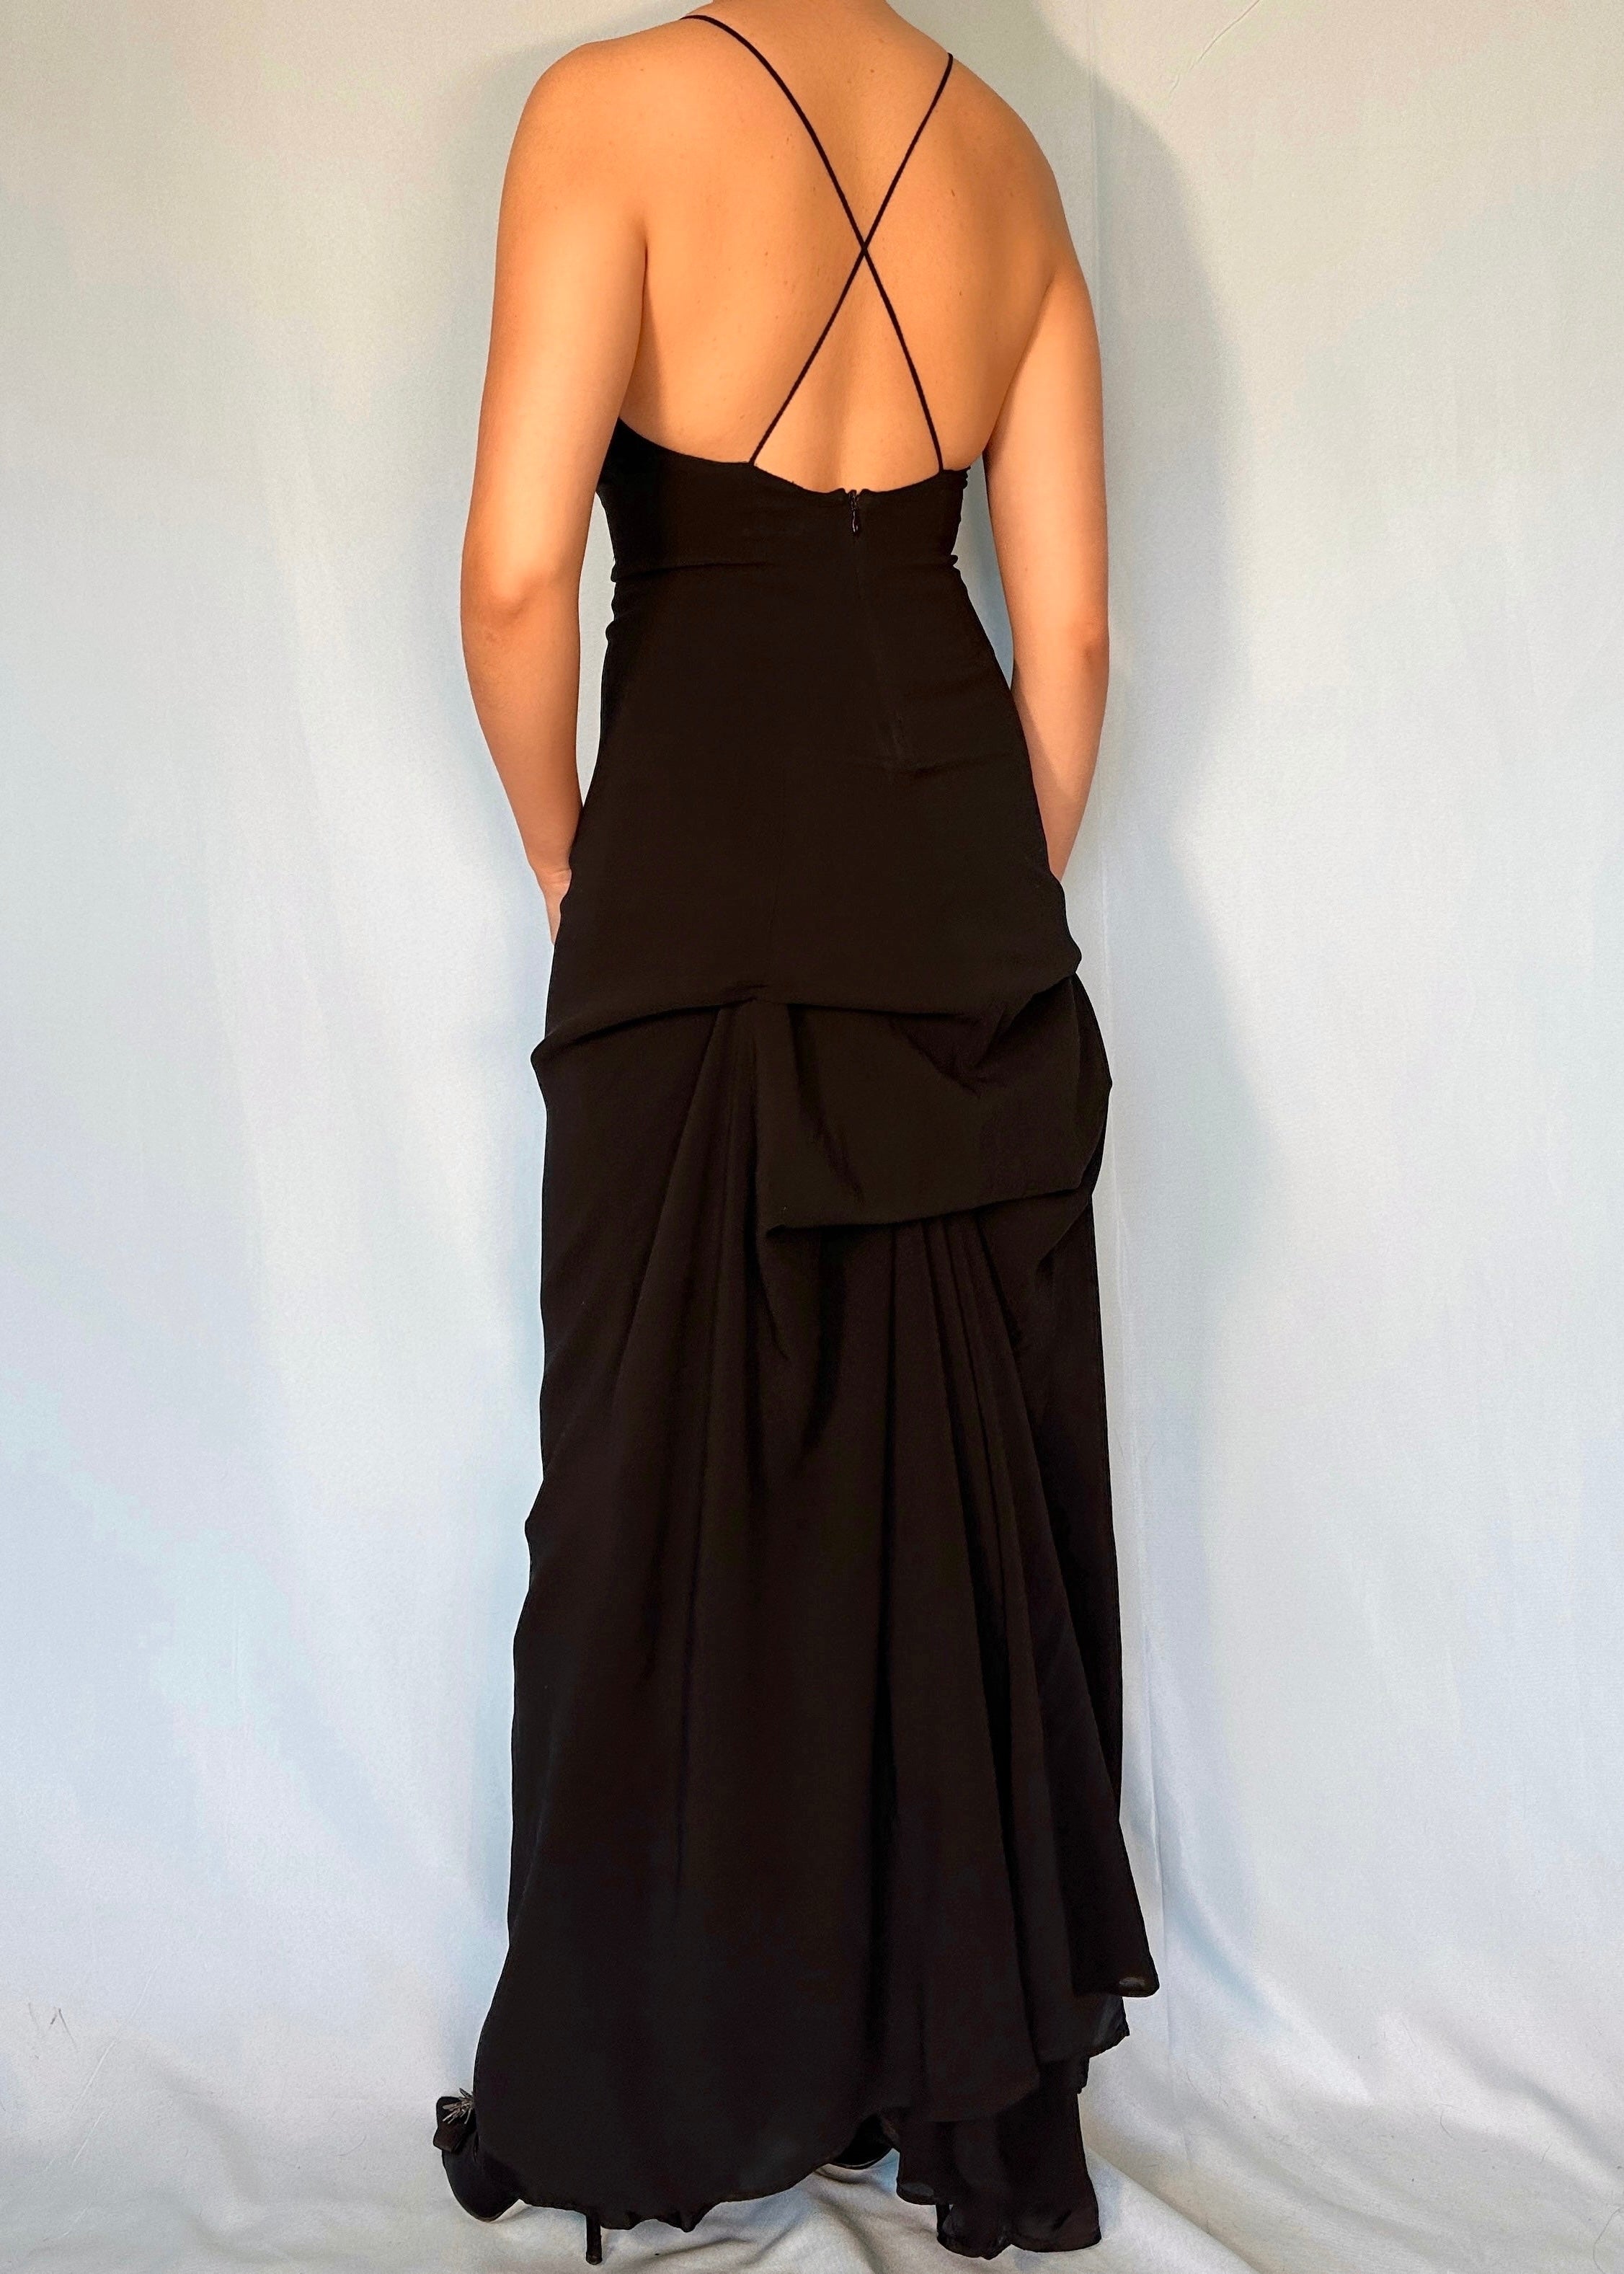 Dries Van Noten Black Hand-Painted Maxi Dress